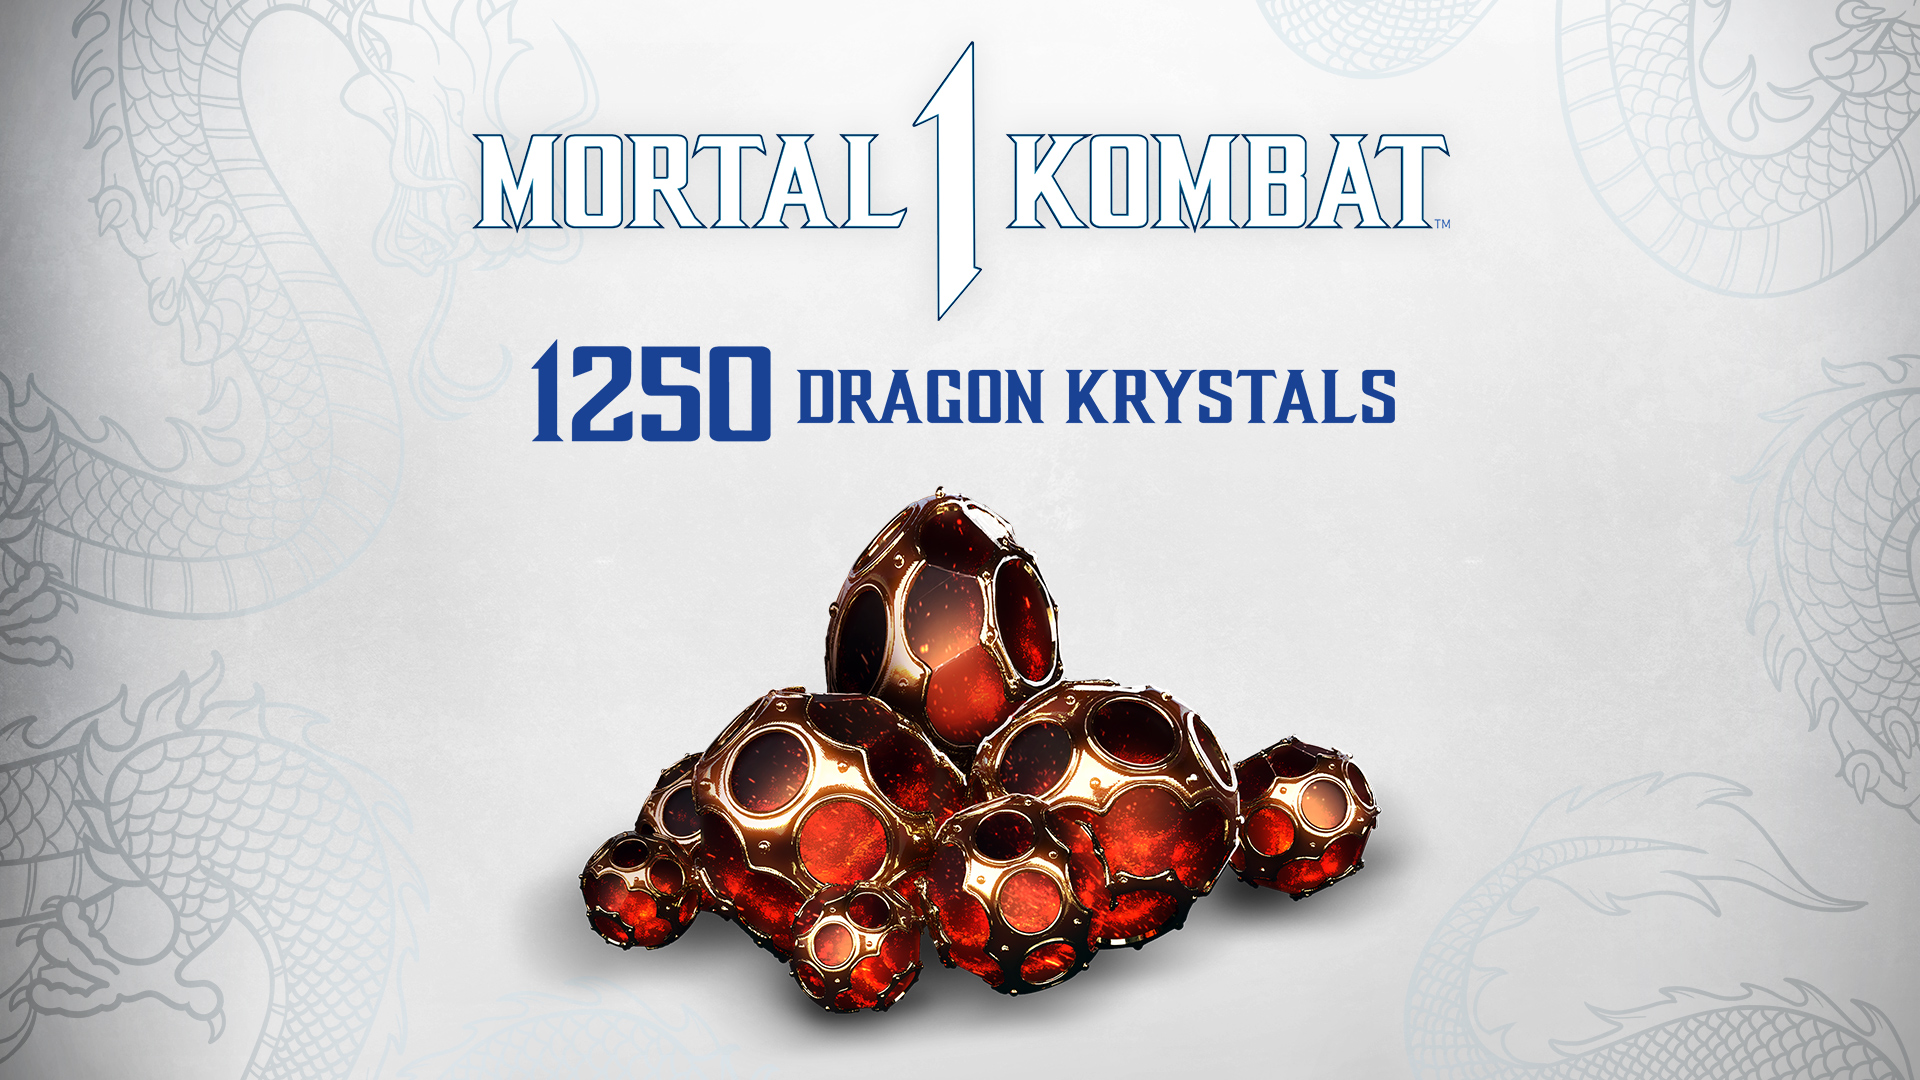 Mortal Kombat 1 - 1250 Dragon Krystals DLC EU PS5 CD Key 7.68 usd